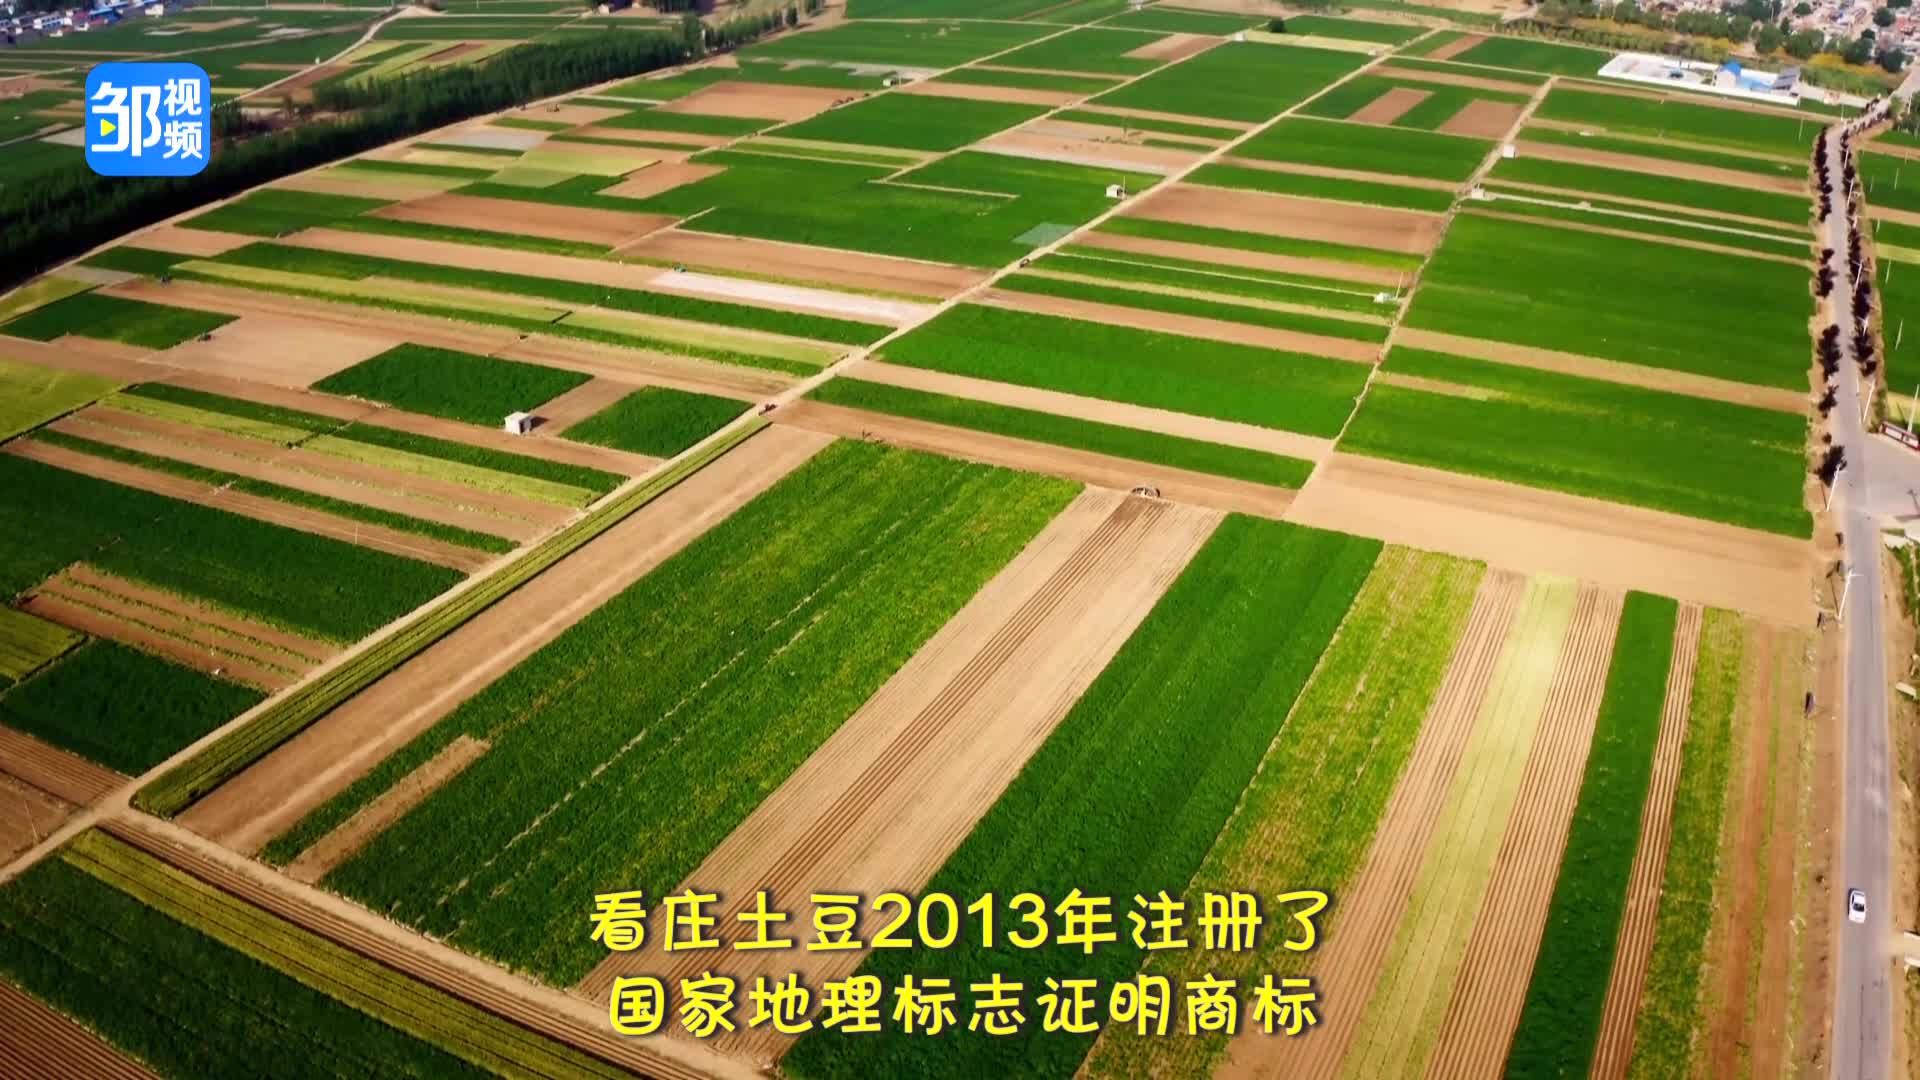 【邹视频·新闻】45秒丨邹城特色农产品——看庄土豆